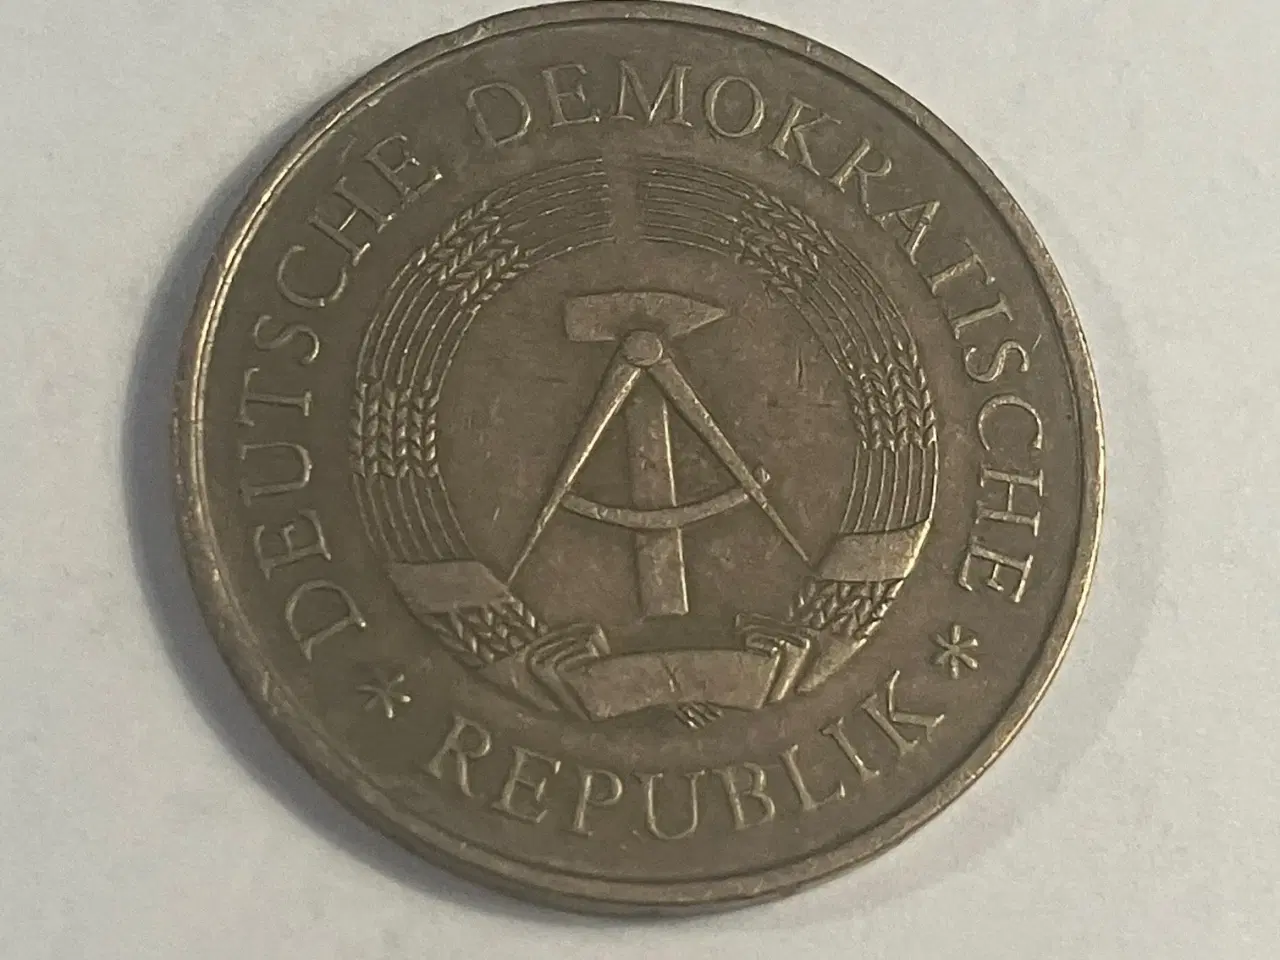 Billede 2 - 5 mark DDR 1969 Germany